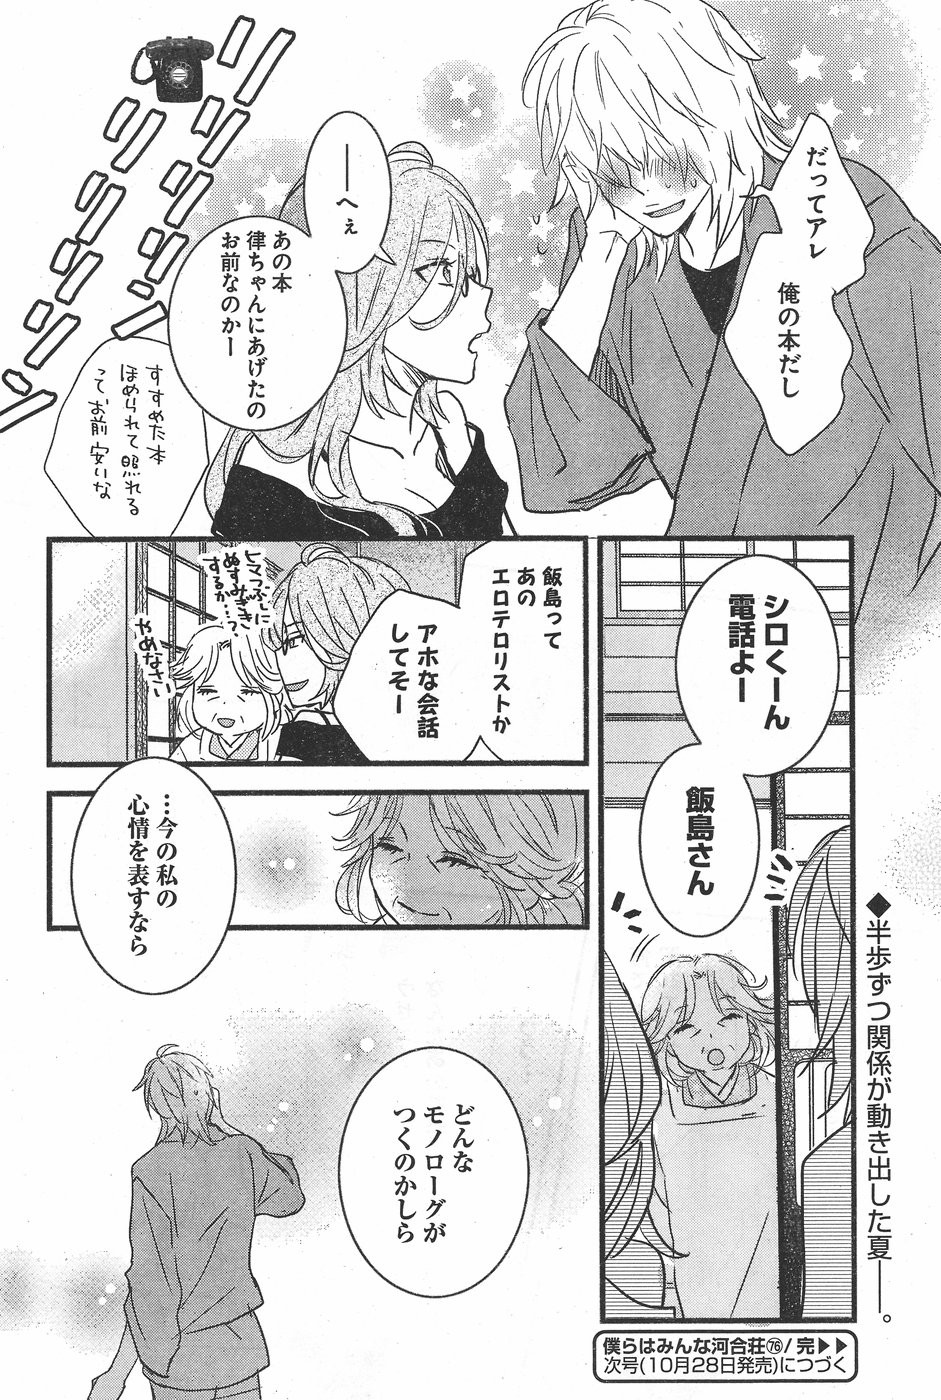 Bokura wa Minna Kawaisou - Chapter 76 - Page 16